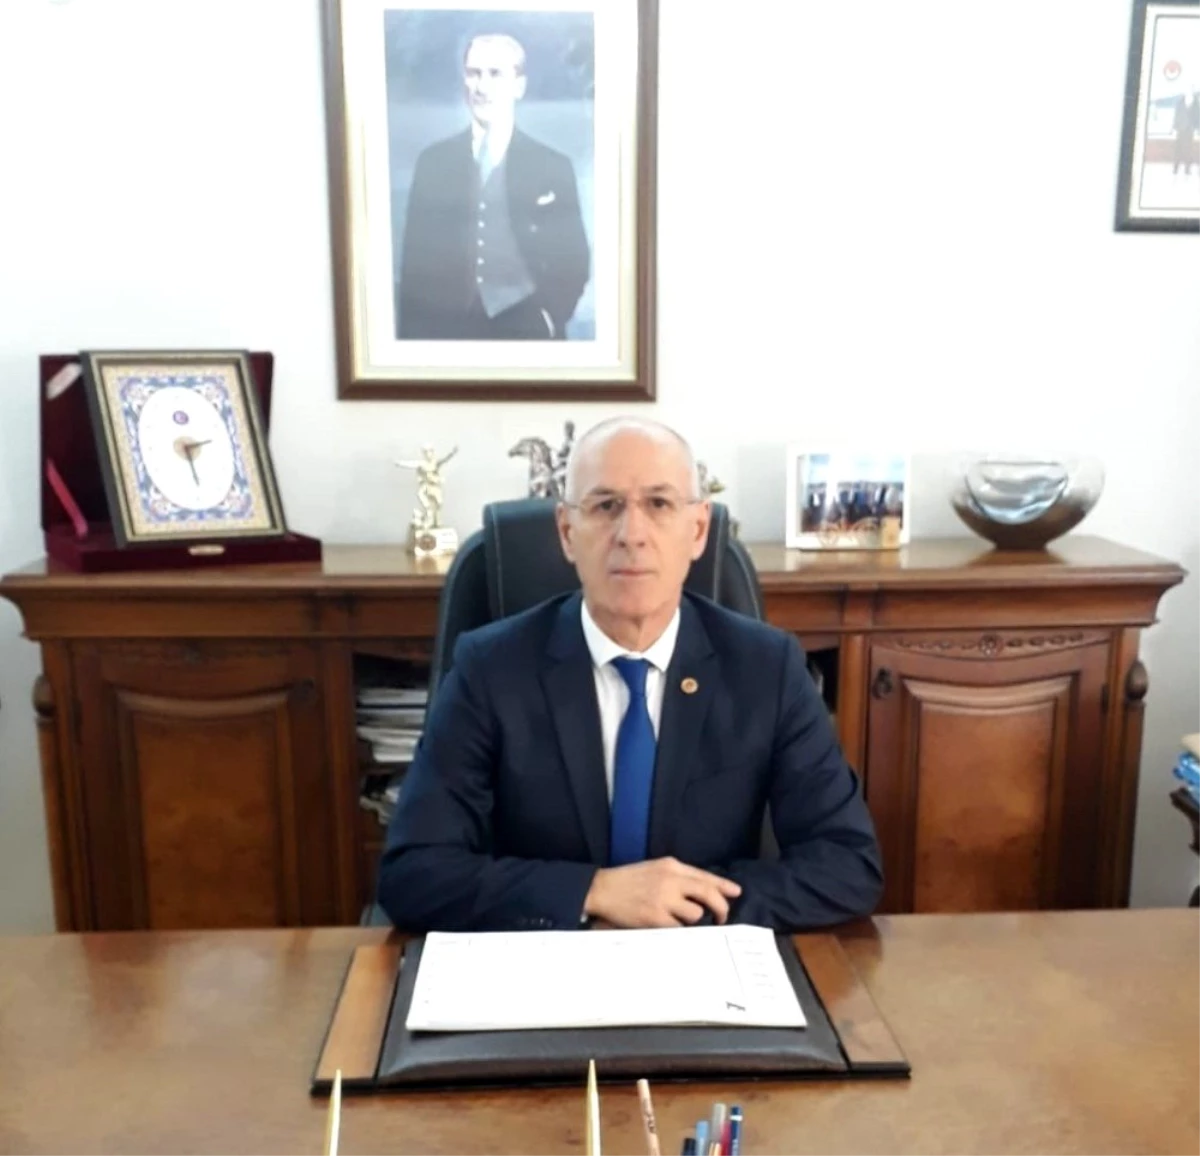 Tes-İş Şube Başkanı Mustafa Aydın, 30 Ağustos Zafer Bayramı dolayısıyla mesaj yayınladı